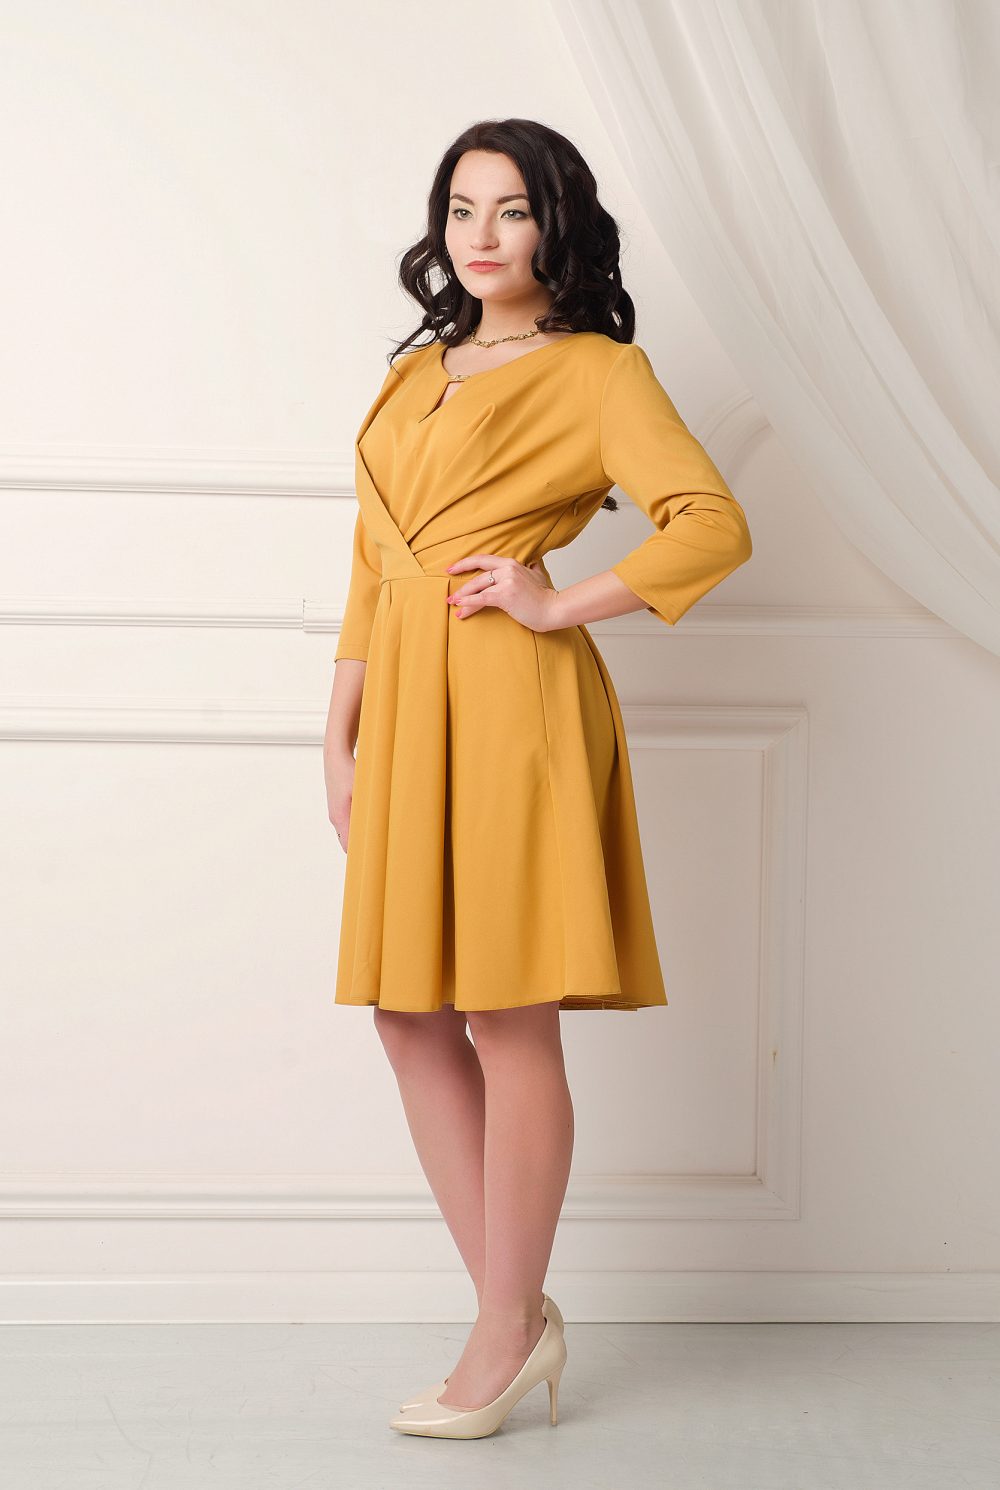 красивое платье российского дизайнера Любовь Джбааи 2